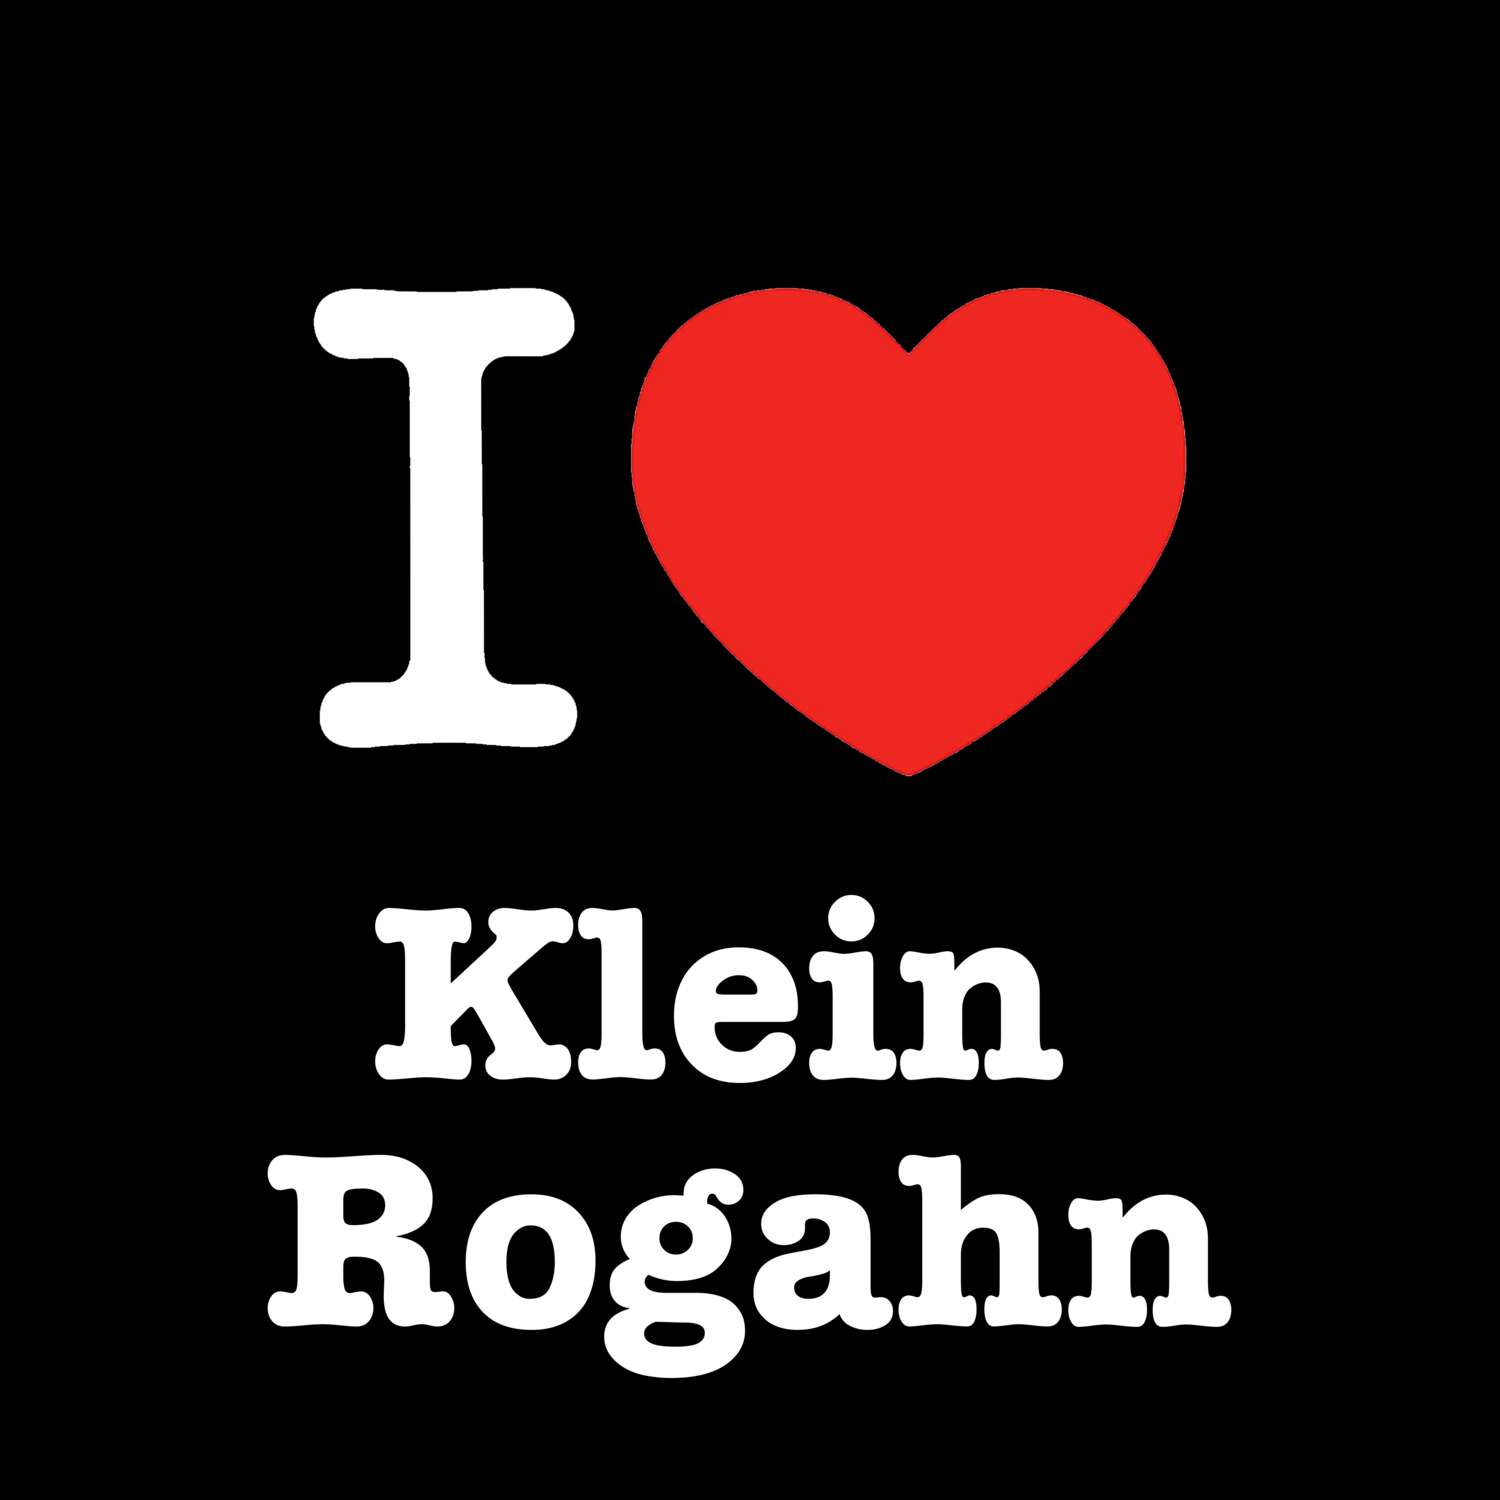 Klein Rogahn T-Shirt »I love«